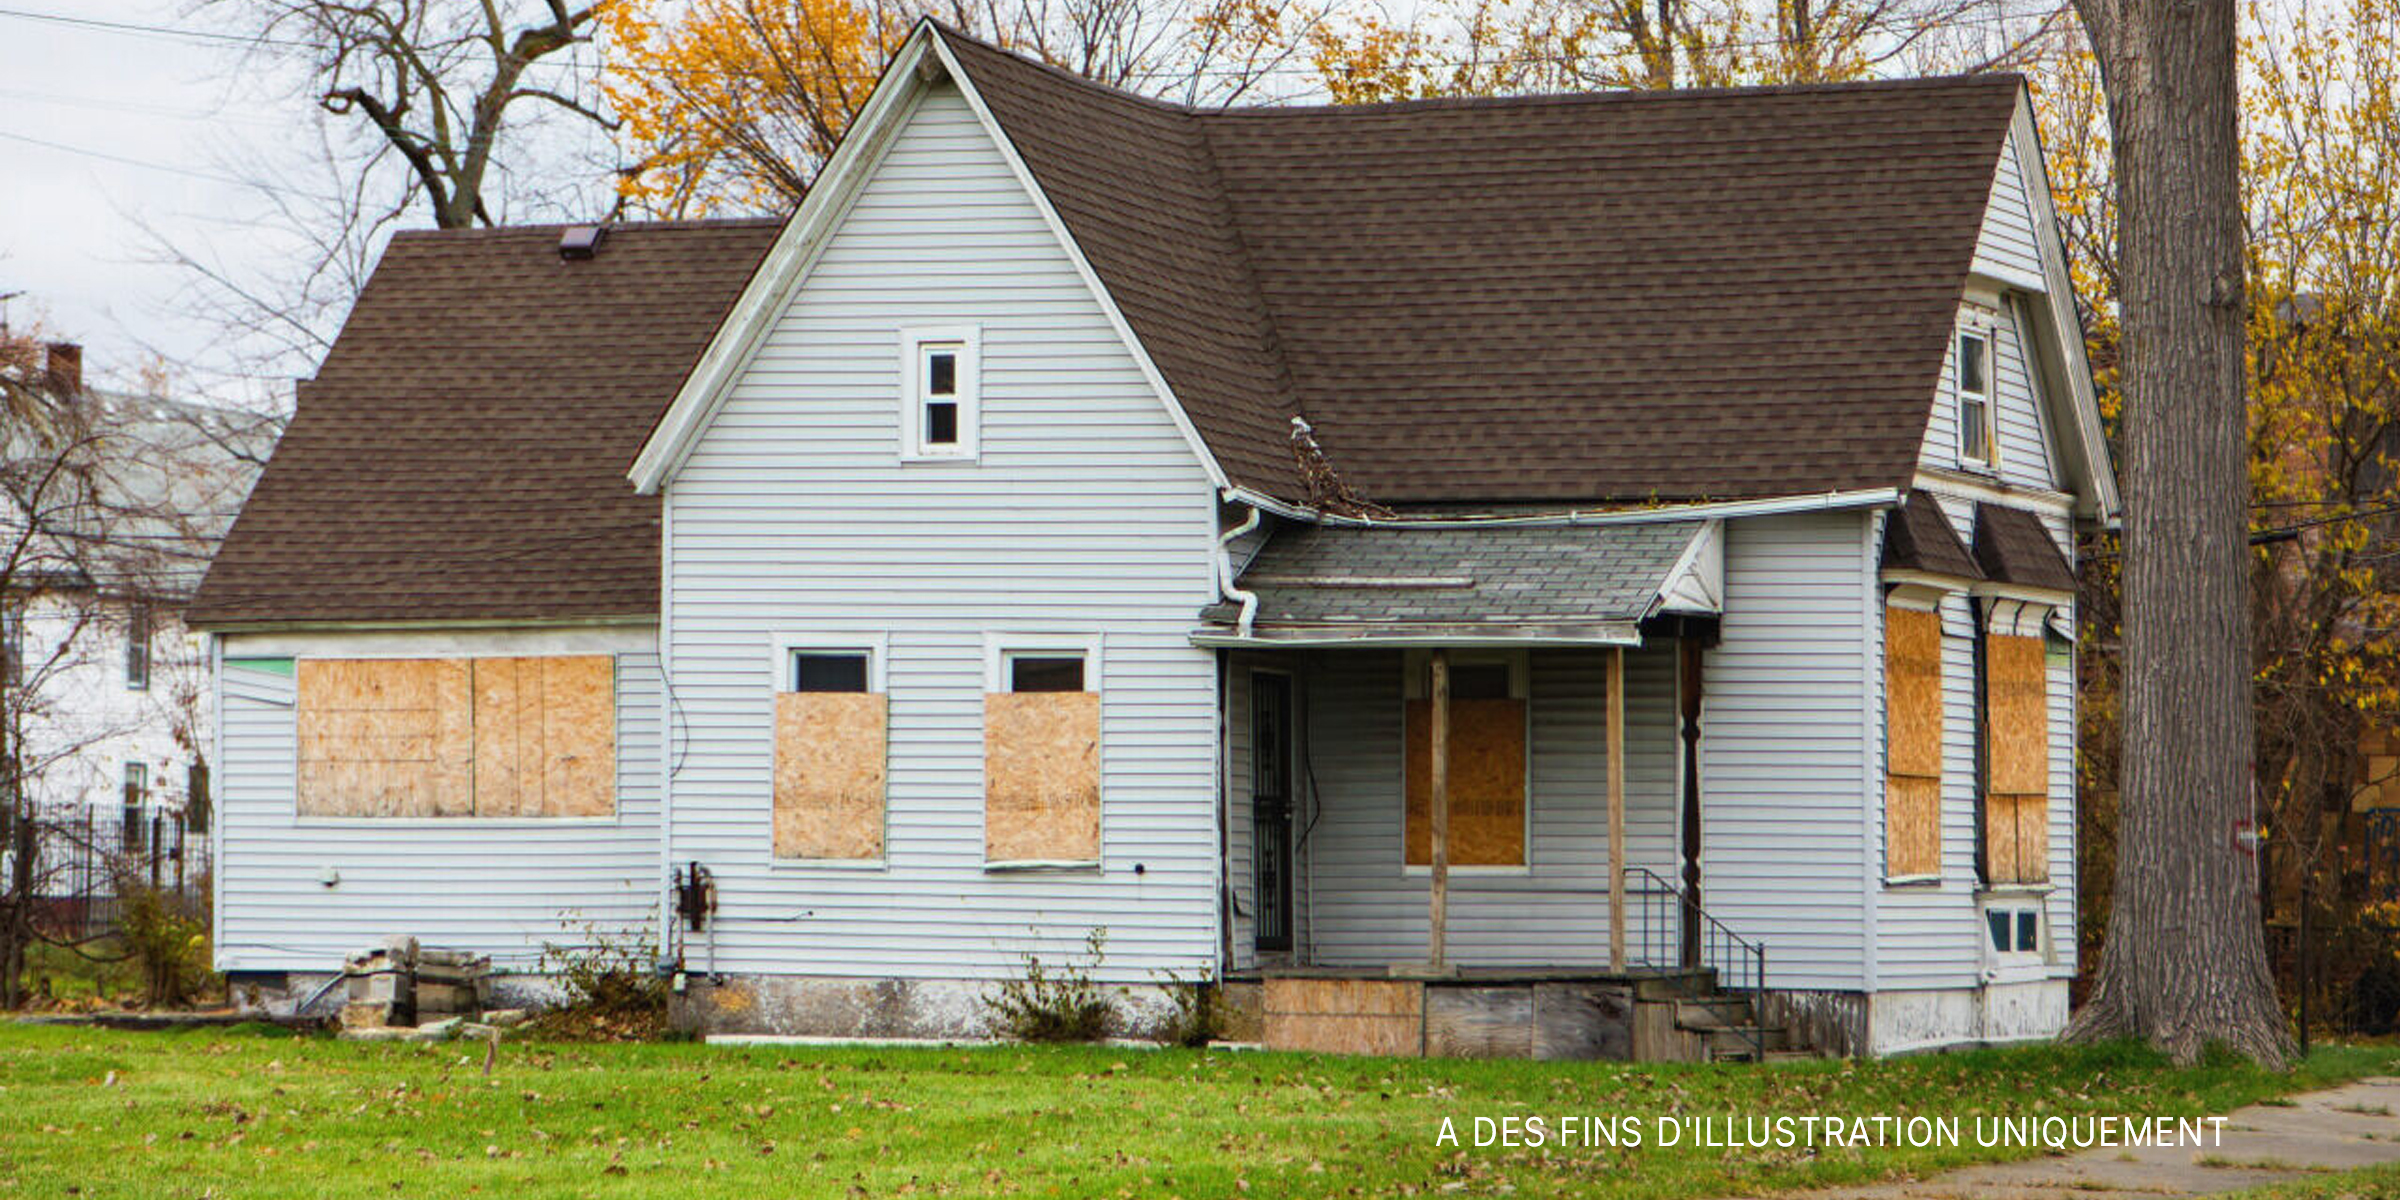 Une maison abîmée par les intempéries avec des fenêtres condamnées | Source : Shutterstock